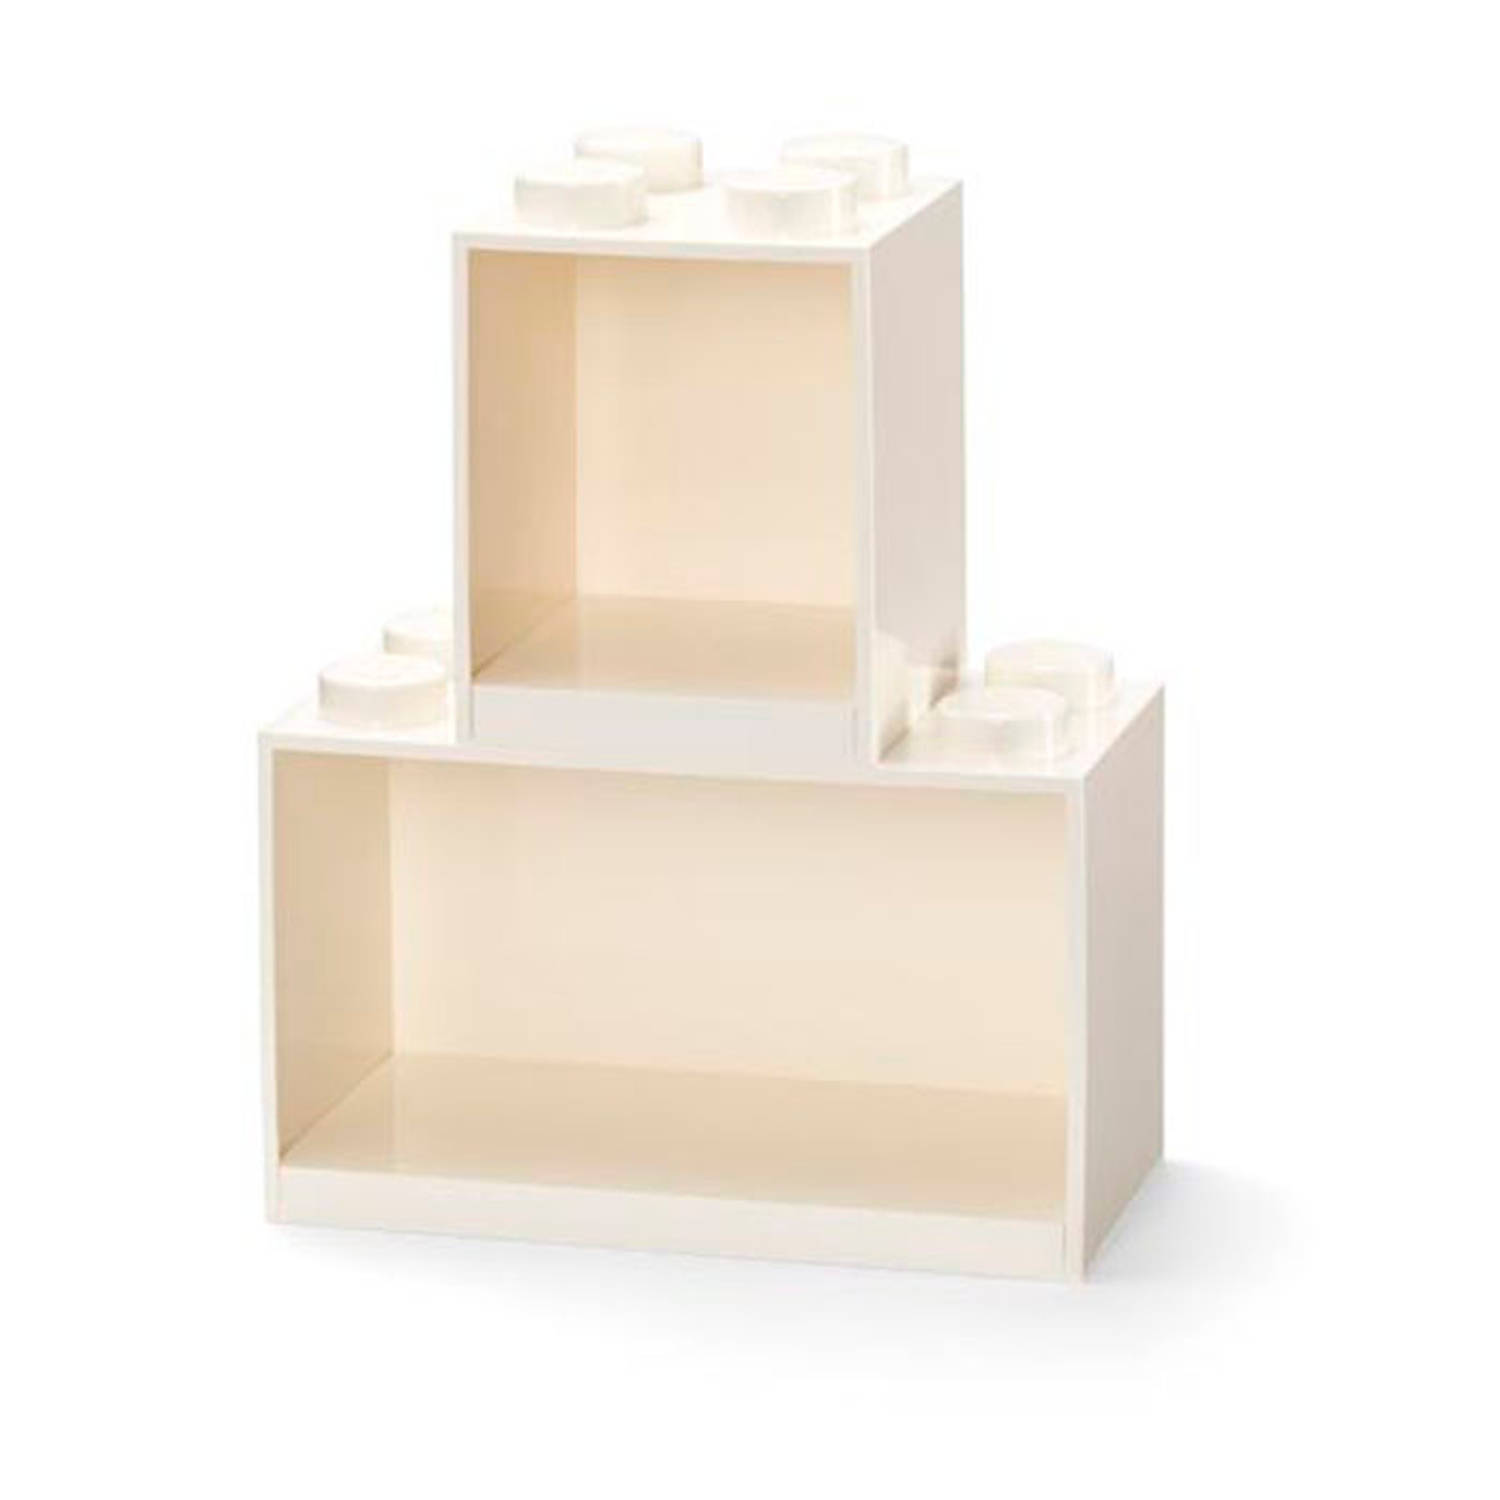 LEGO steen schappenset 31,8 x 21,1 cm wit 2-delig